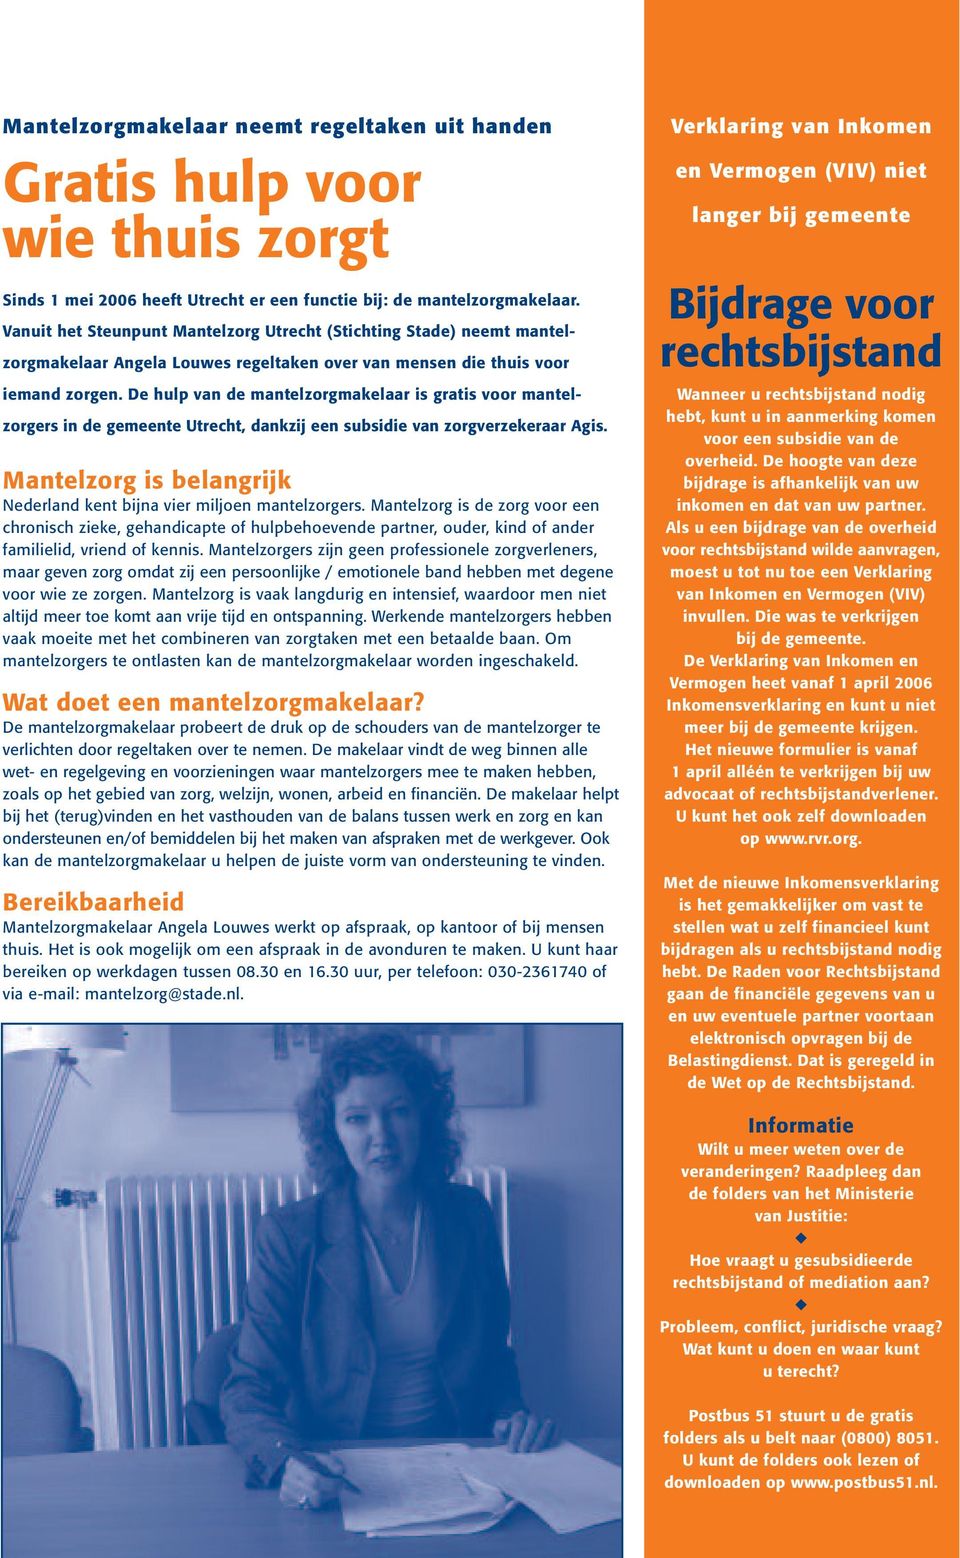 De hulp van de mantelzorgmakelaar is gratis voor mantelzorgers in de gemeente Utrecht, dankzij een subsidie van zorgverzekeraar Agis.